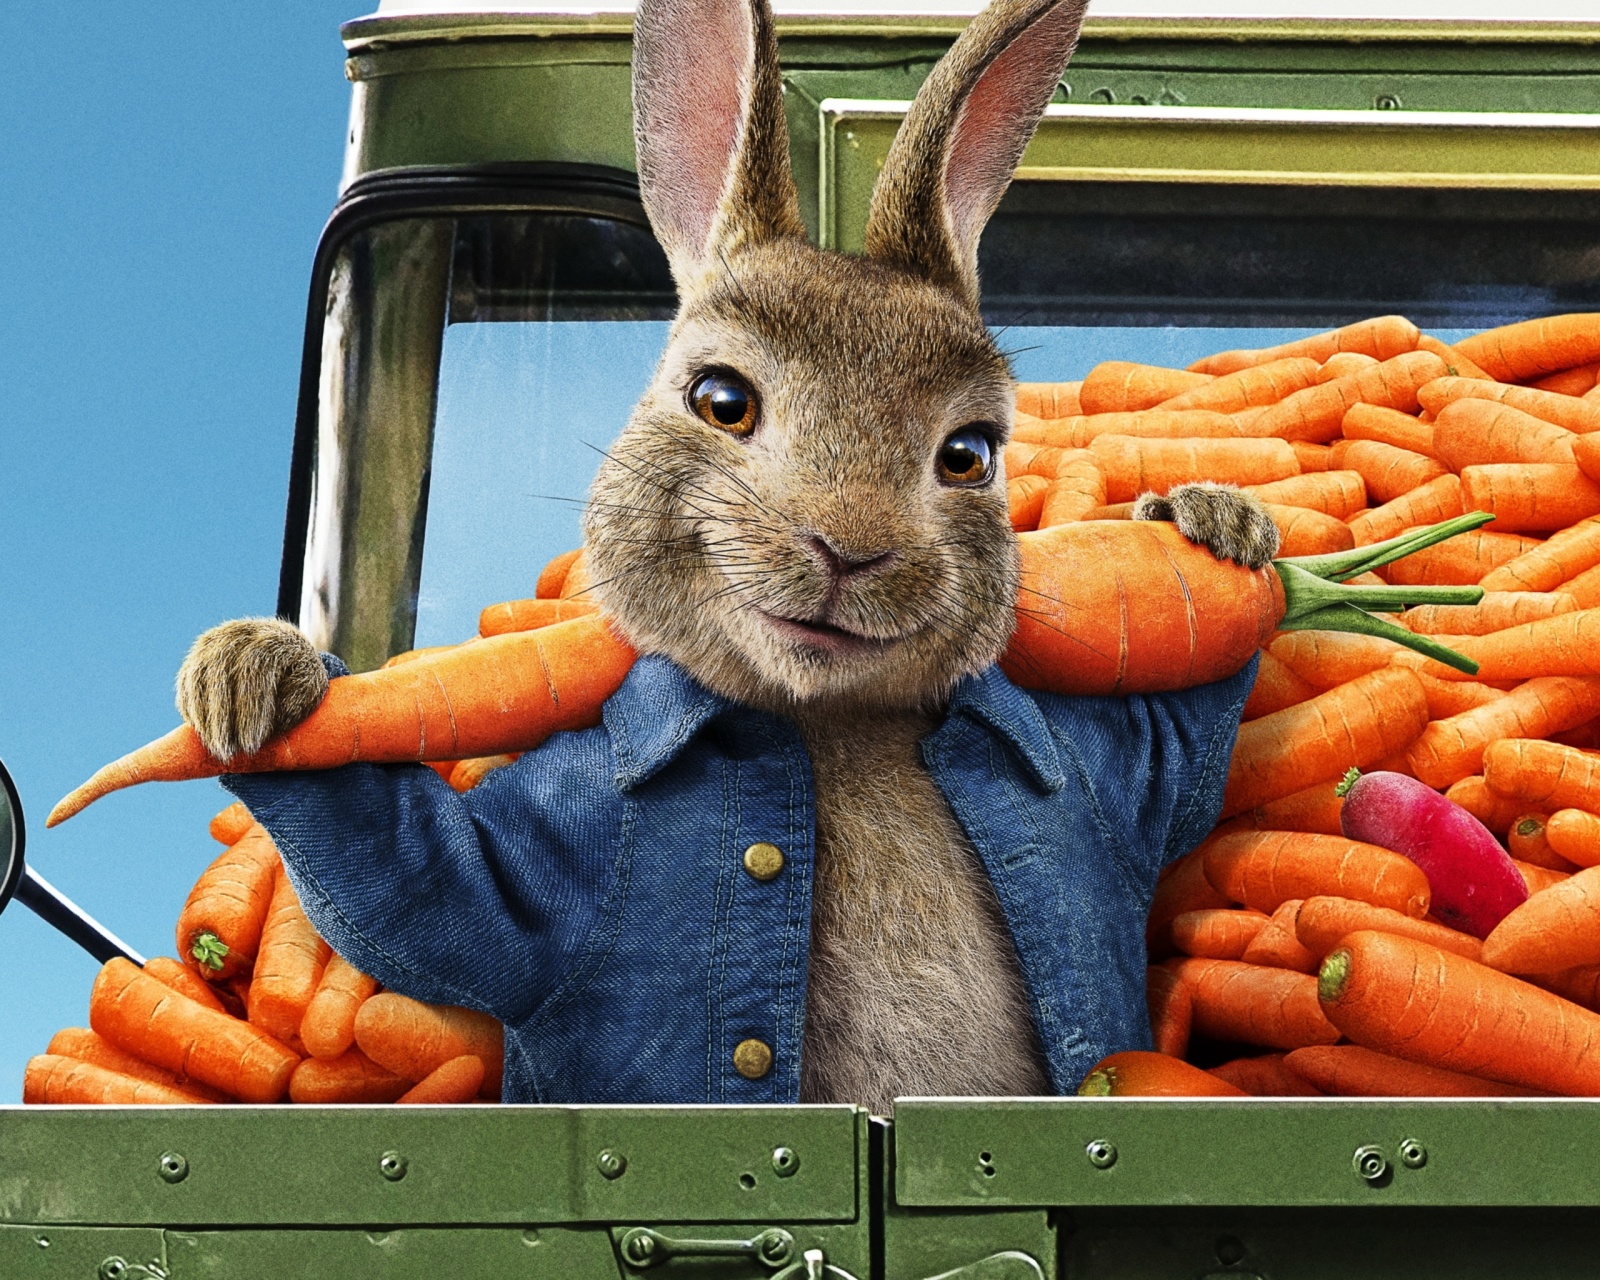 Peter Rabbit 2 The Runaway 2020 wallpaper 1600x1280